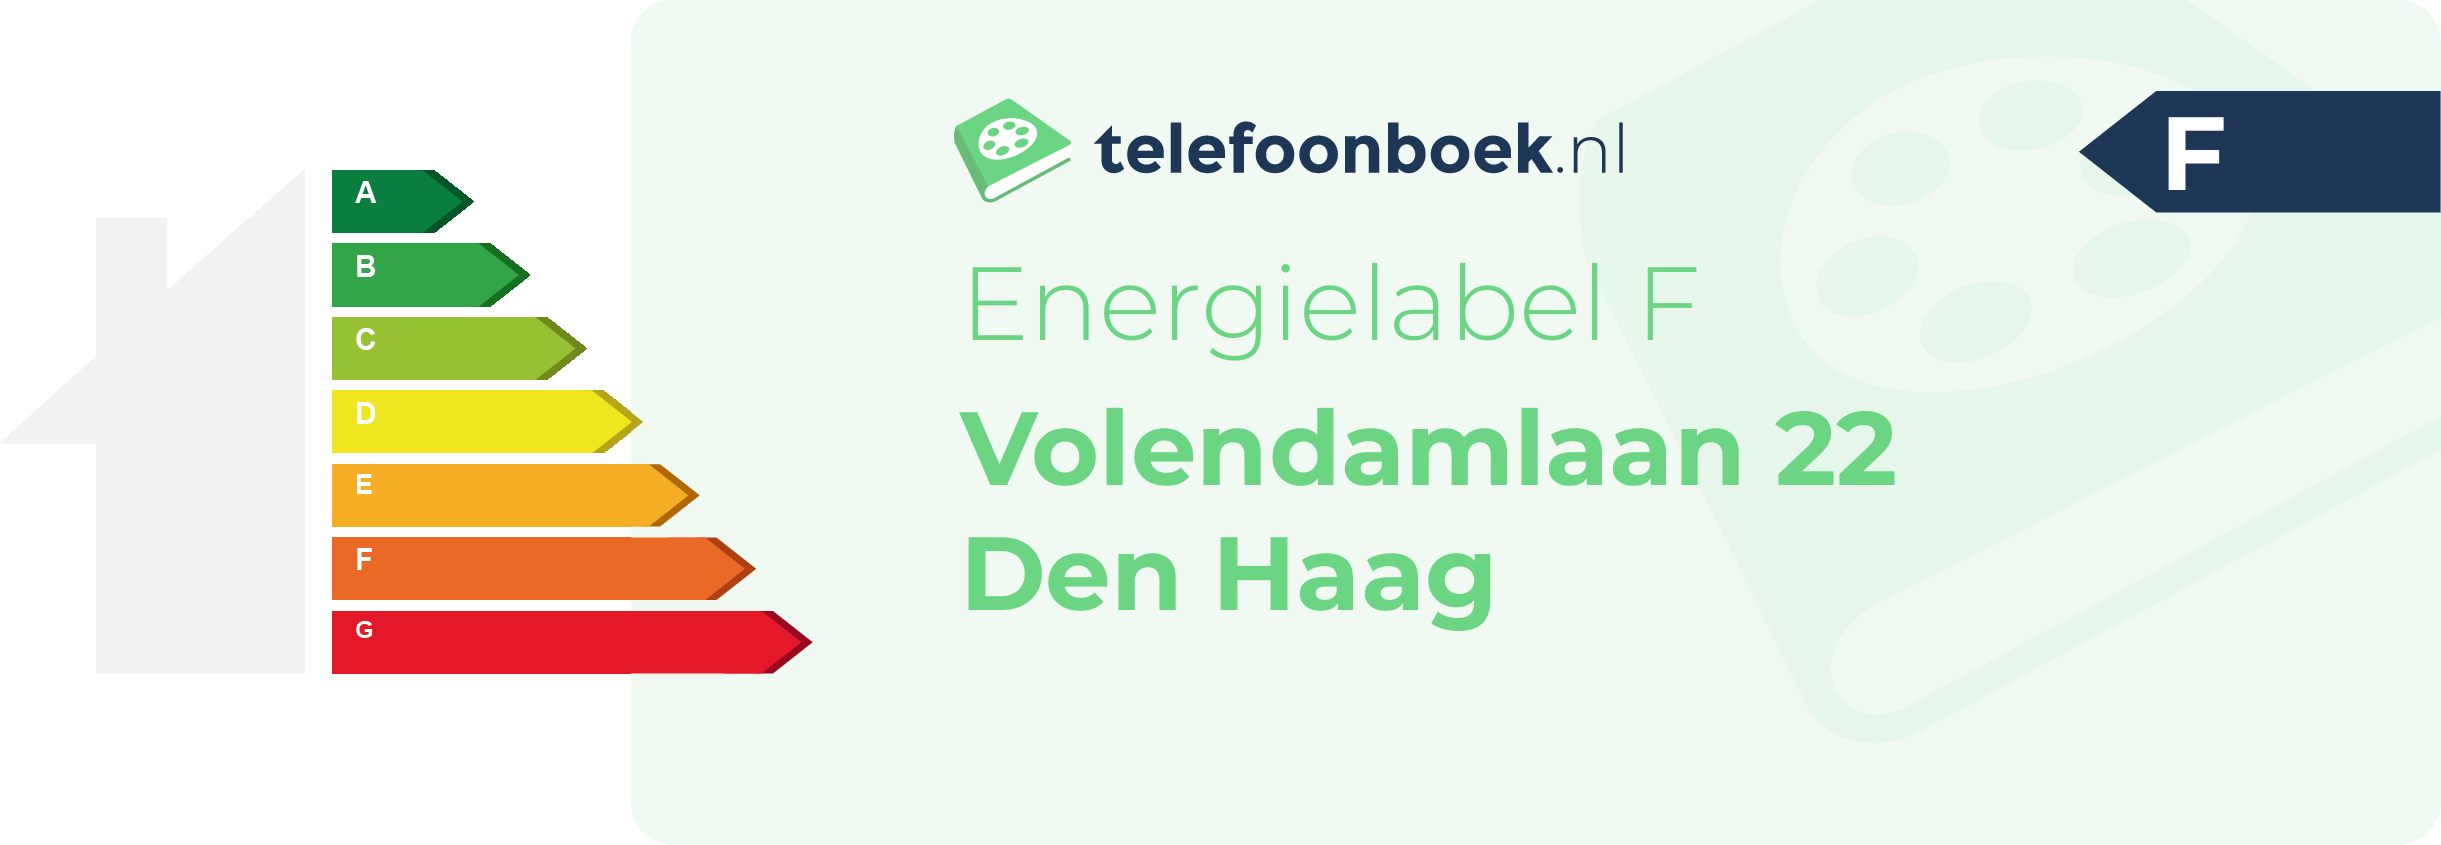 Energielabel Volendamlaan 22 Den Haag